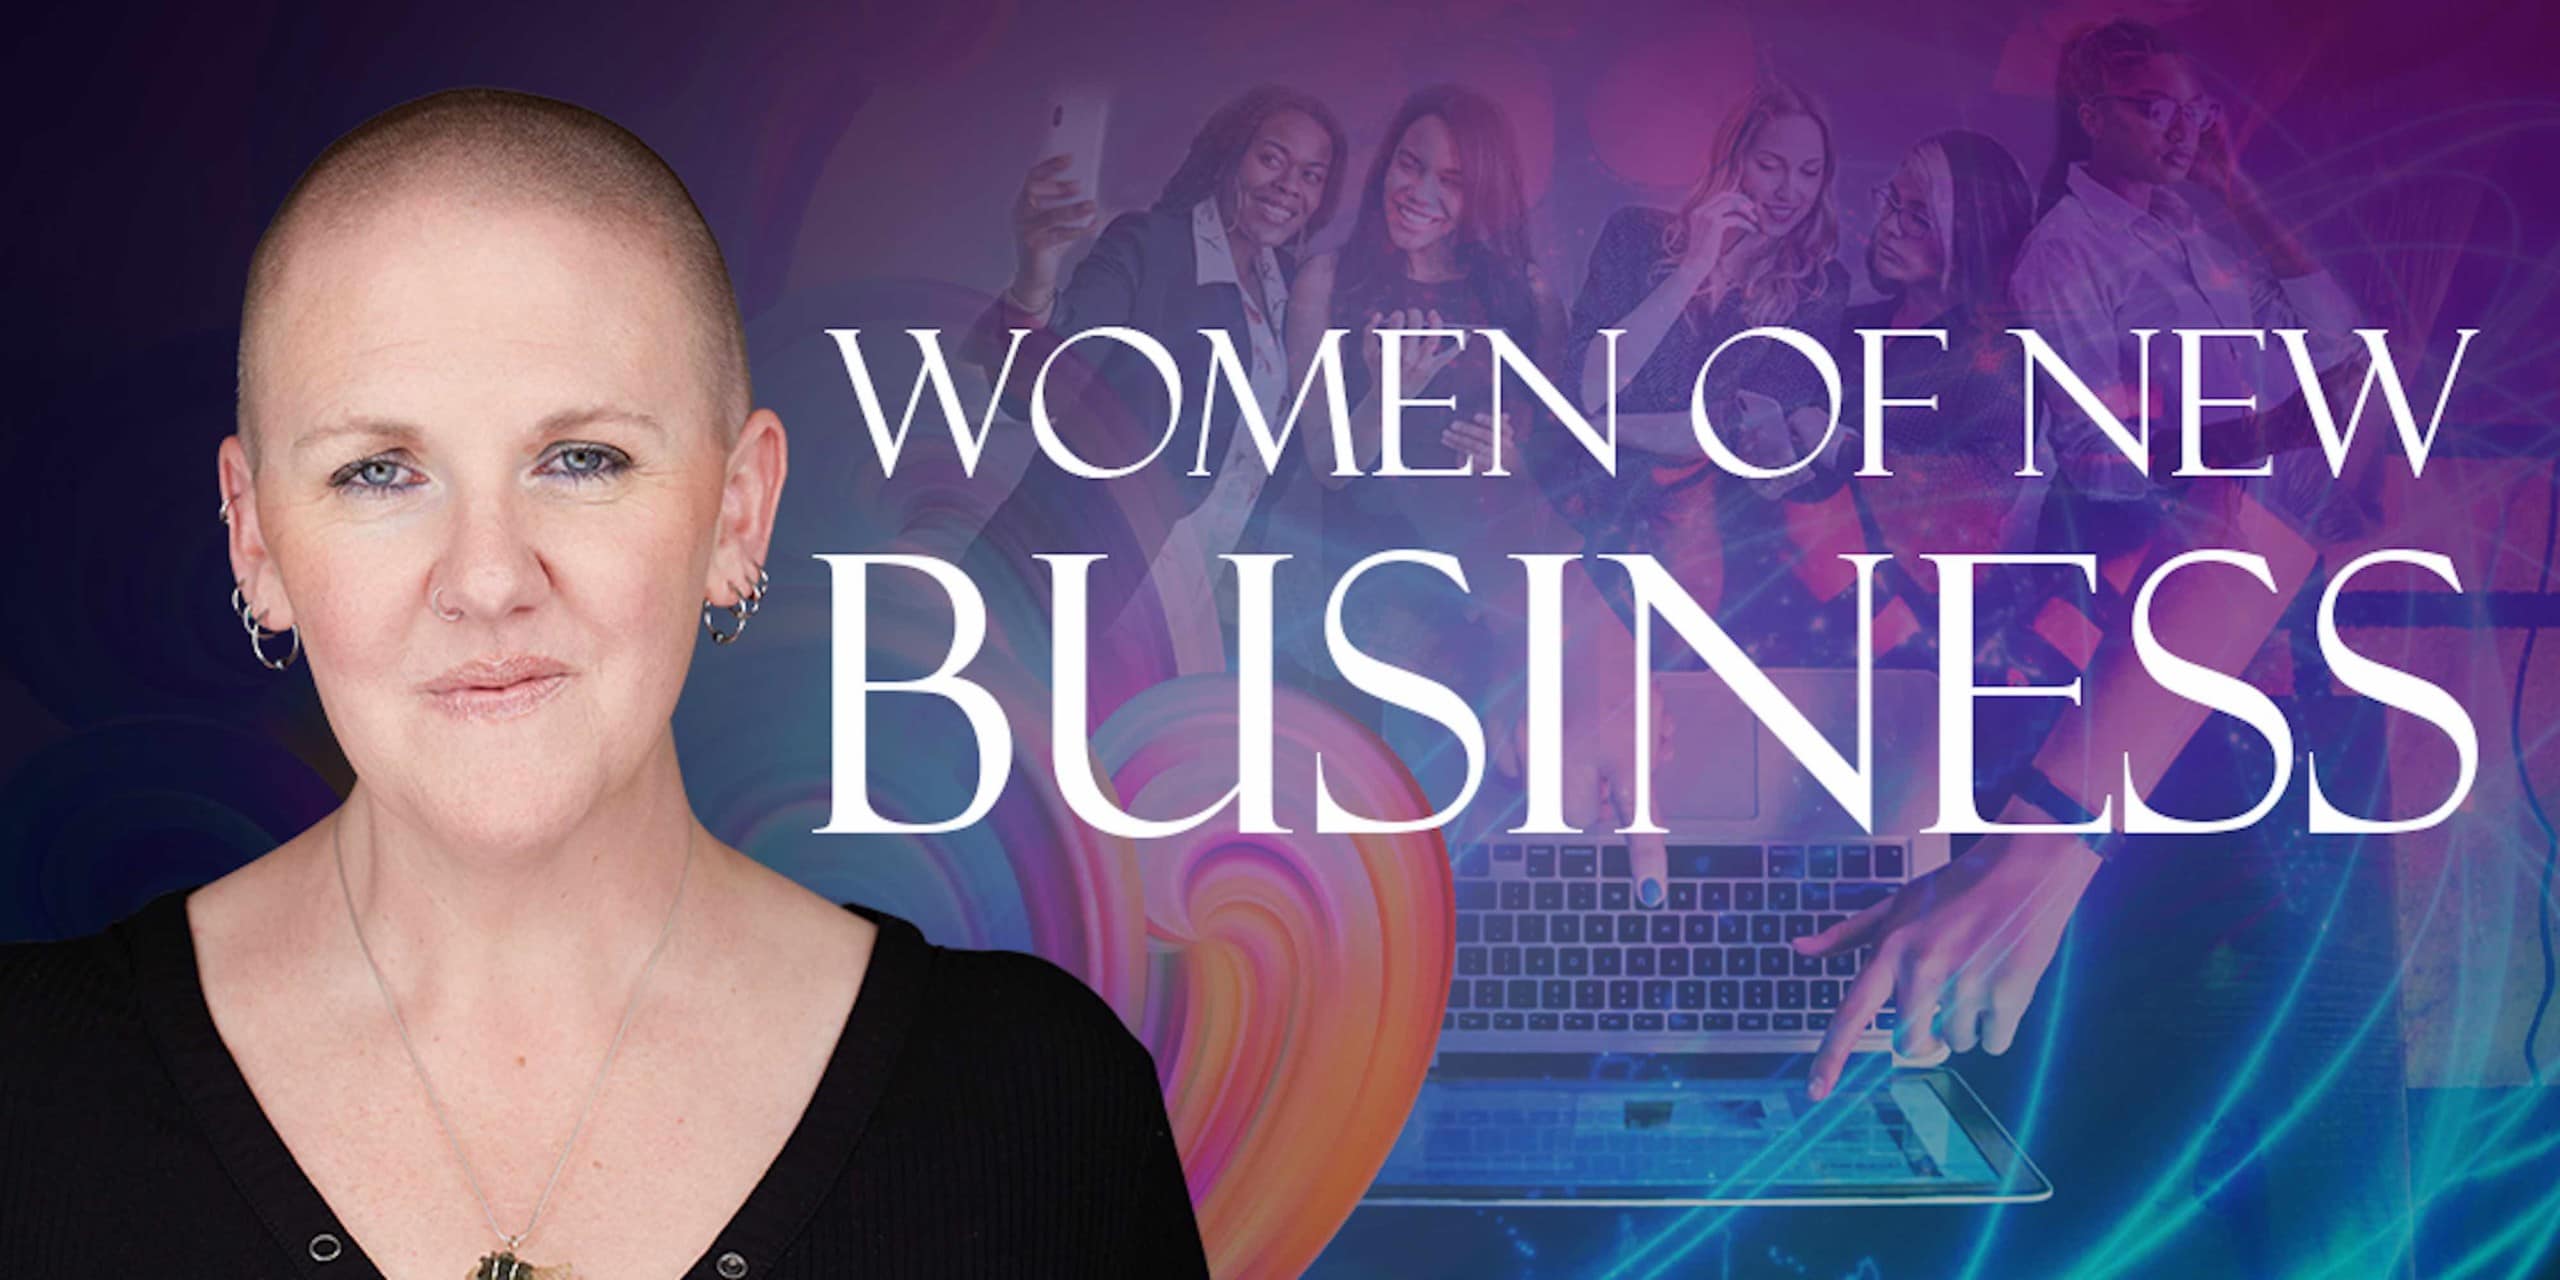 Meet the Women of New Business